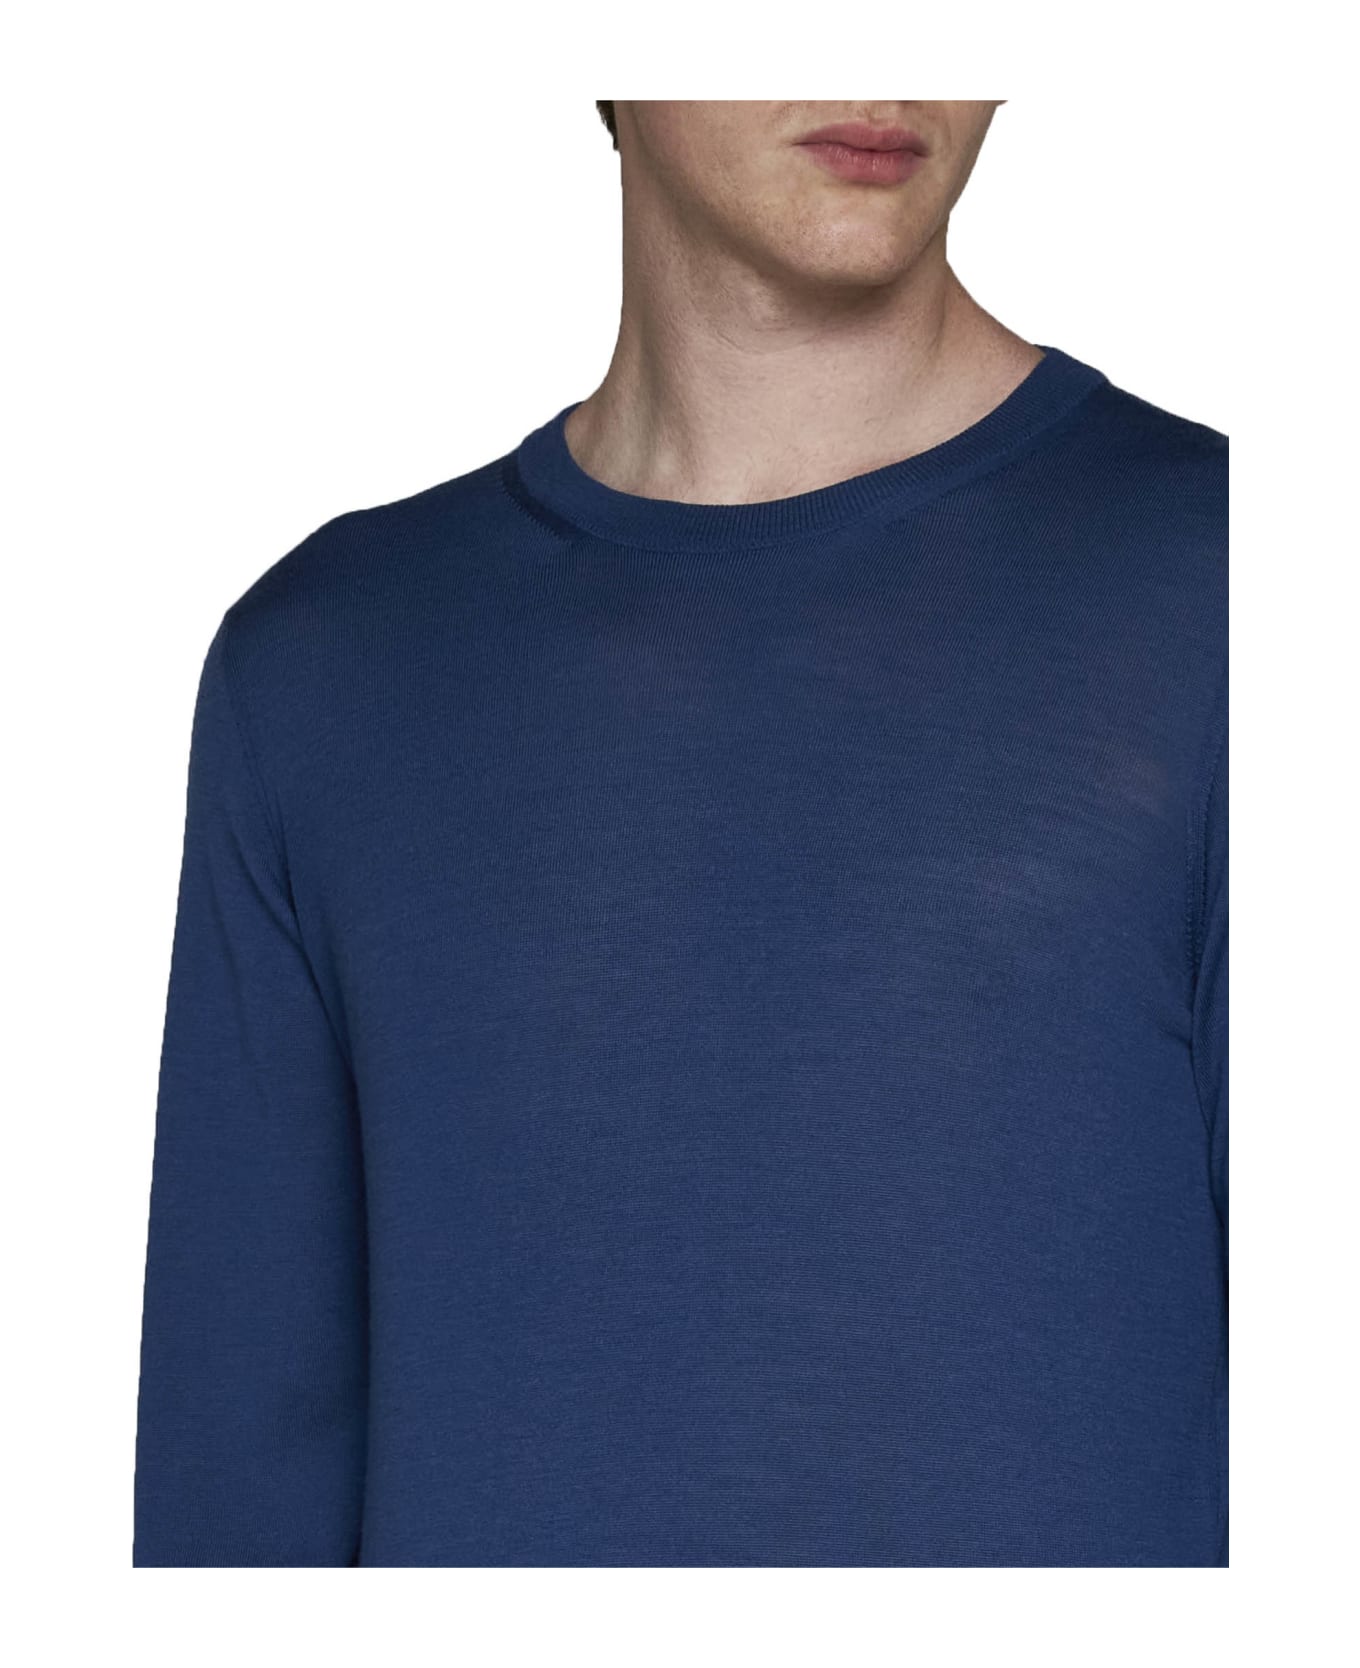 Piacenza Cashmere Sweater - Blue ニットウェア